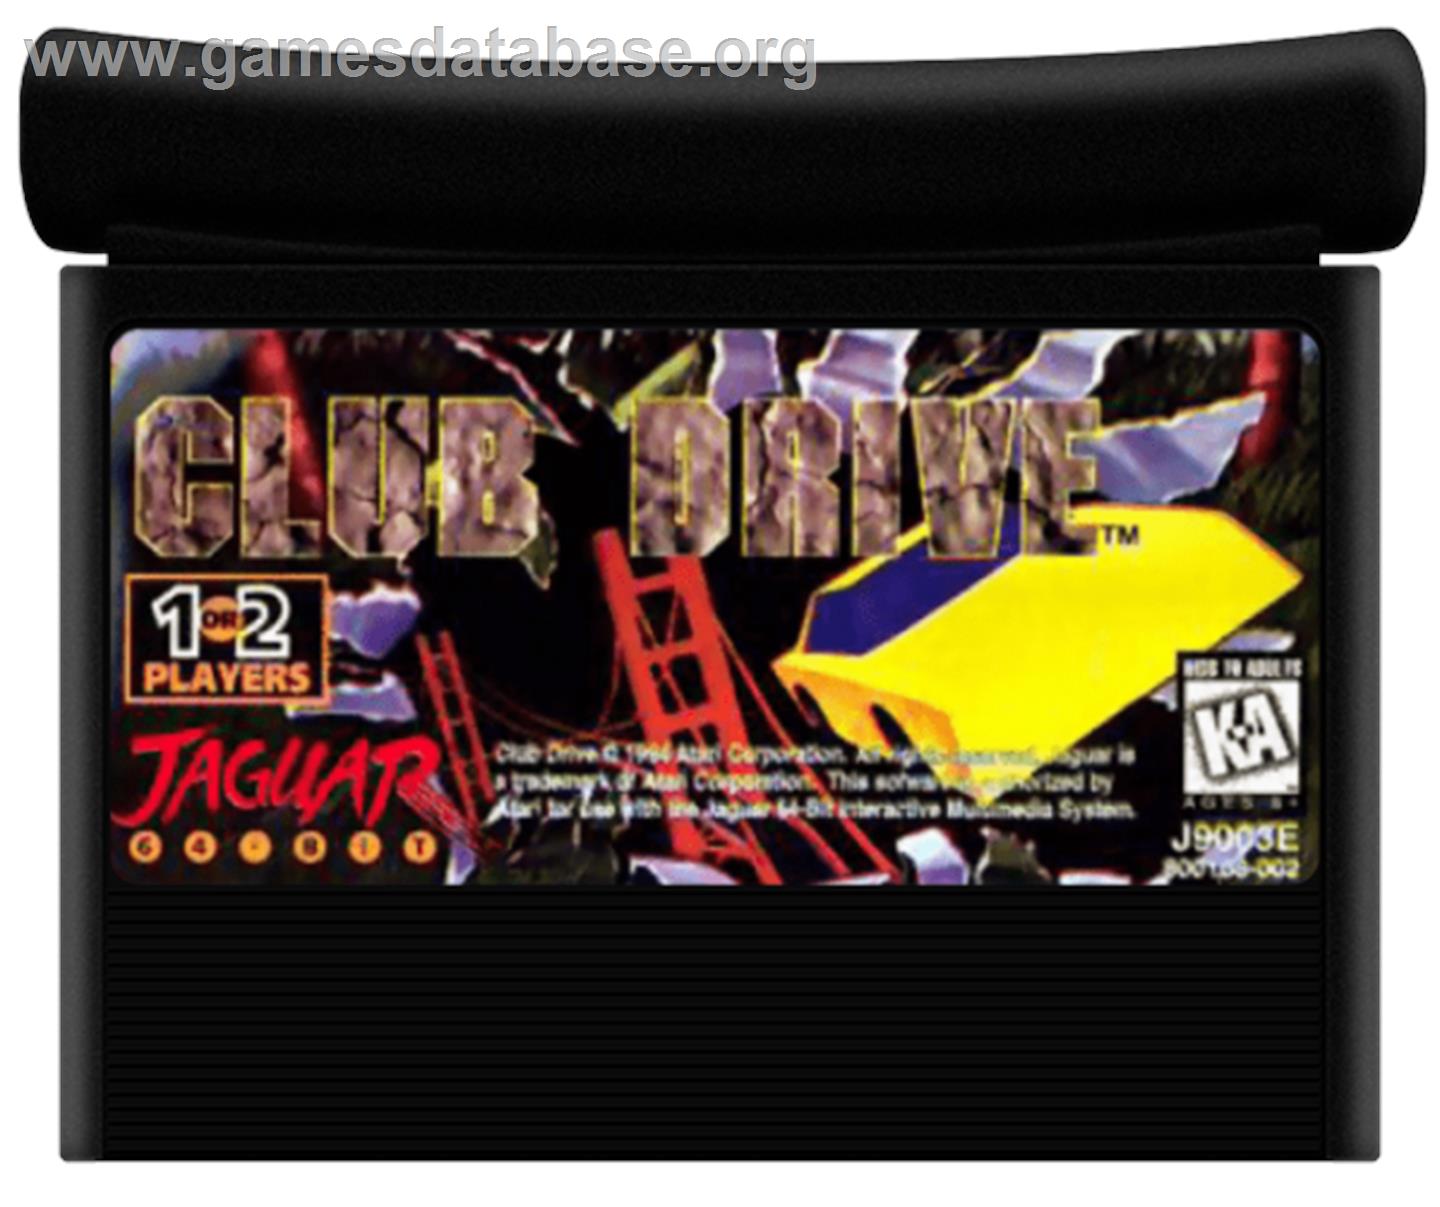 Club Drive - Atari Jaguar - Artwork - Cartridge